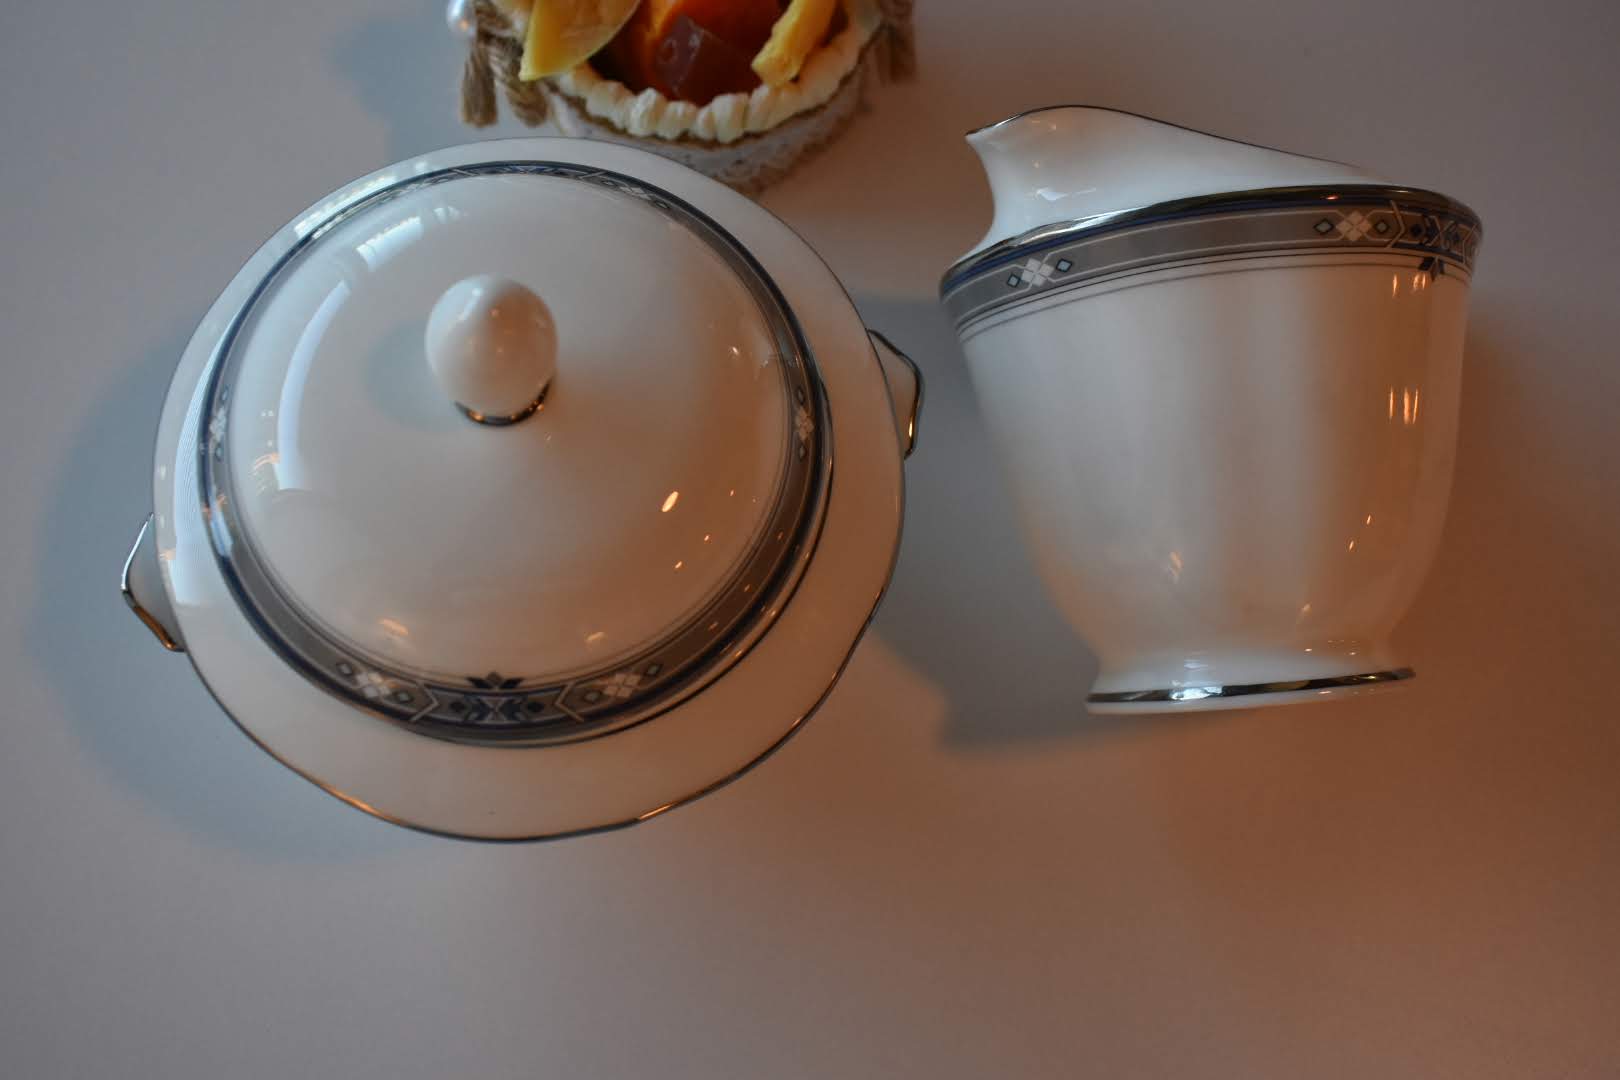 Mikasa - Porcelain Fine China - Blue and Platinum Trim - Sugar Bowl and Creamer Bowl